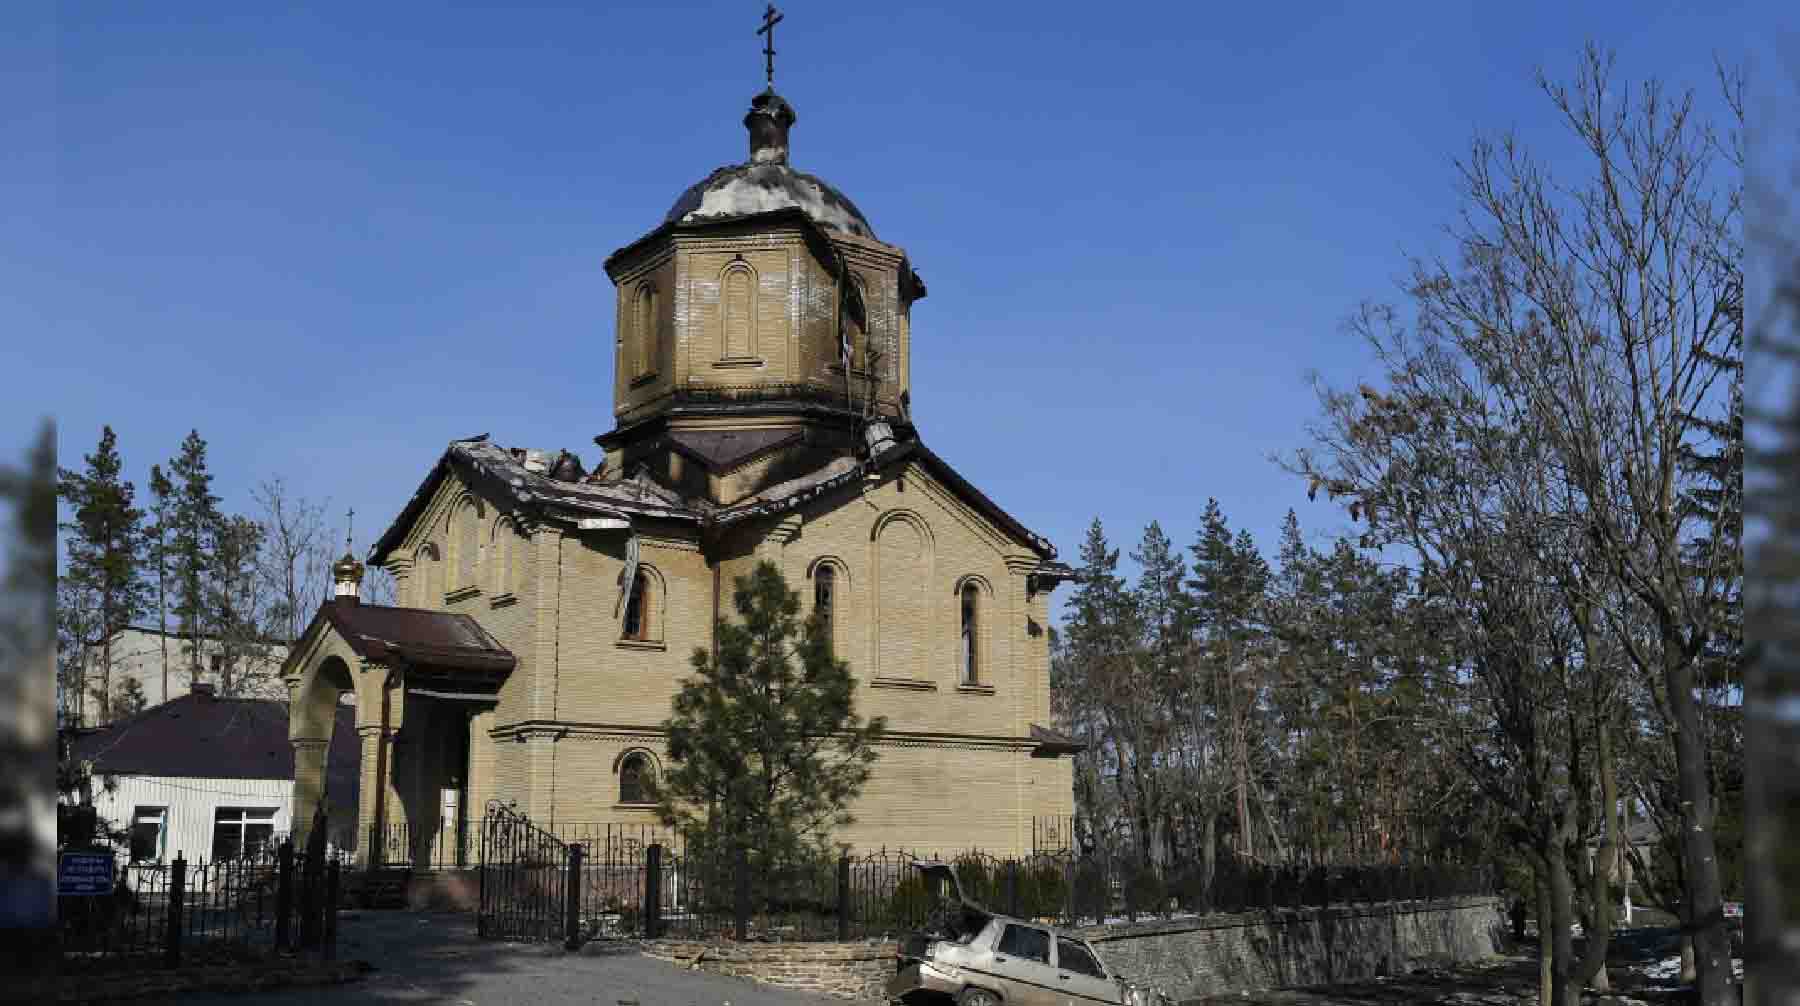 Храм в честь иконы Божией матери "Всех скорбящих радость" в городе Волноваха в Донецкой народной республике, пострадавший во время боевых действий.